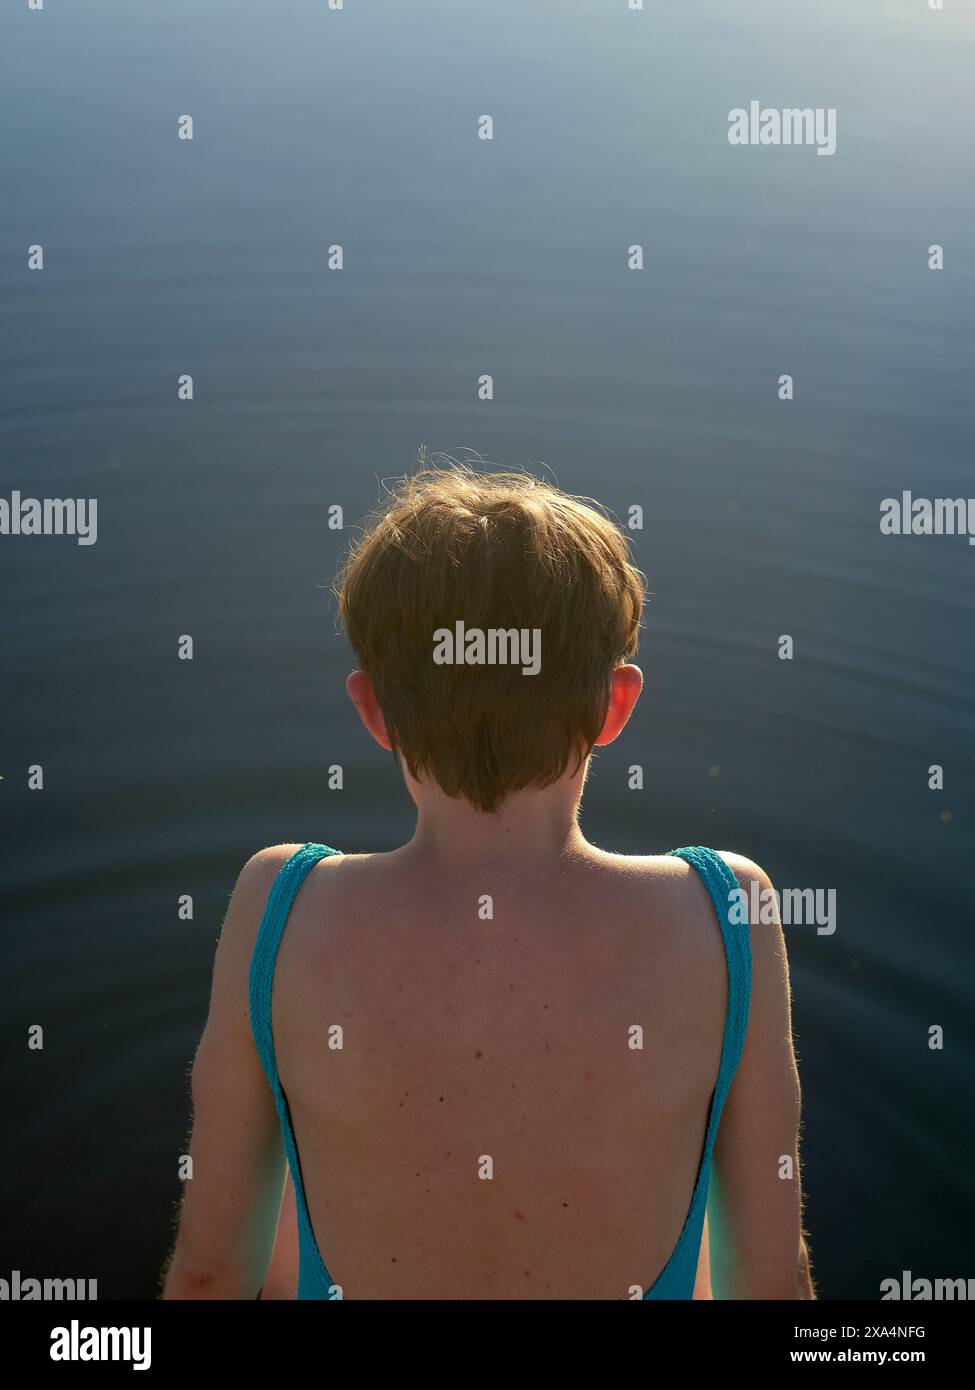 Eine junge Frau mit kurzen Haaren und blauen Badeanzügen steht vor einem ruhigen Gewässer. Stockfoto